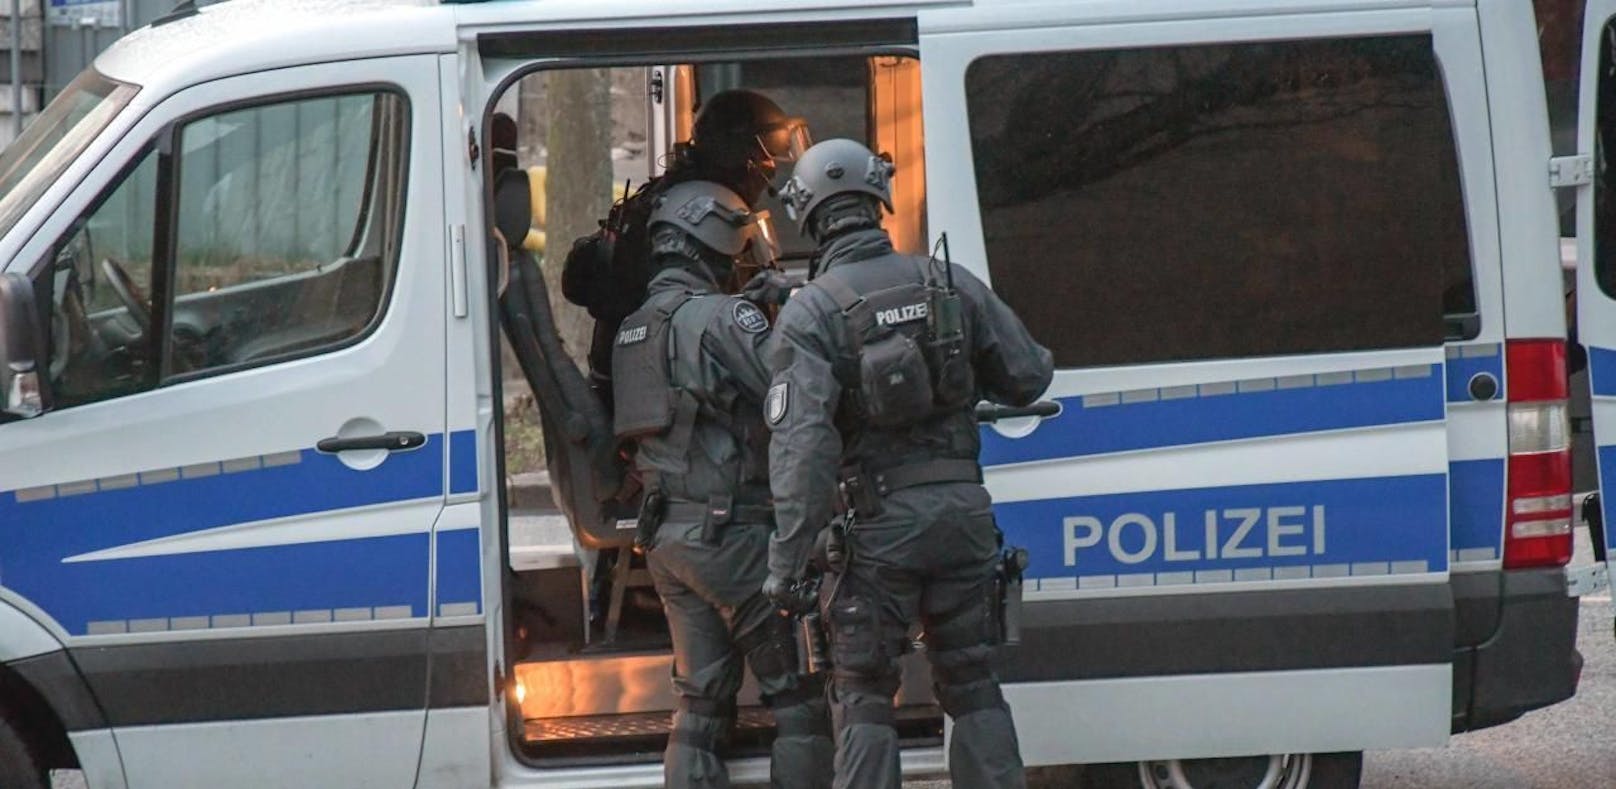 (Symbolbild) Die deutsche Spezialeinheit SEK führte mehrere Razzien gegen Neonazis durch.